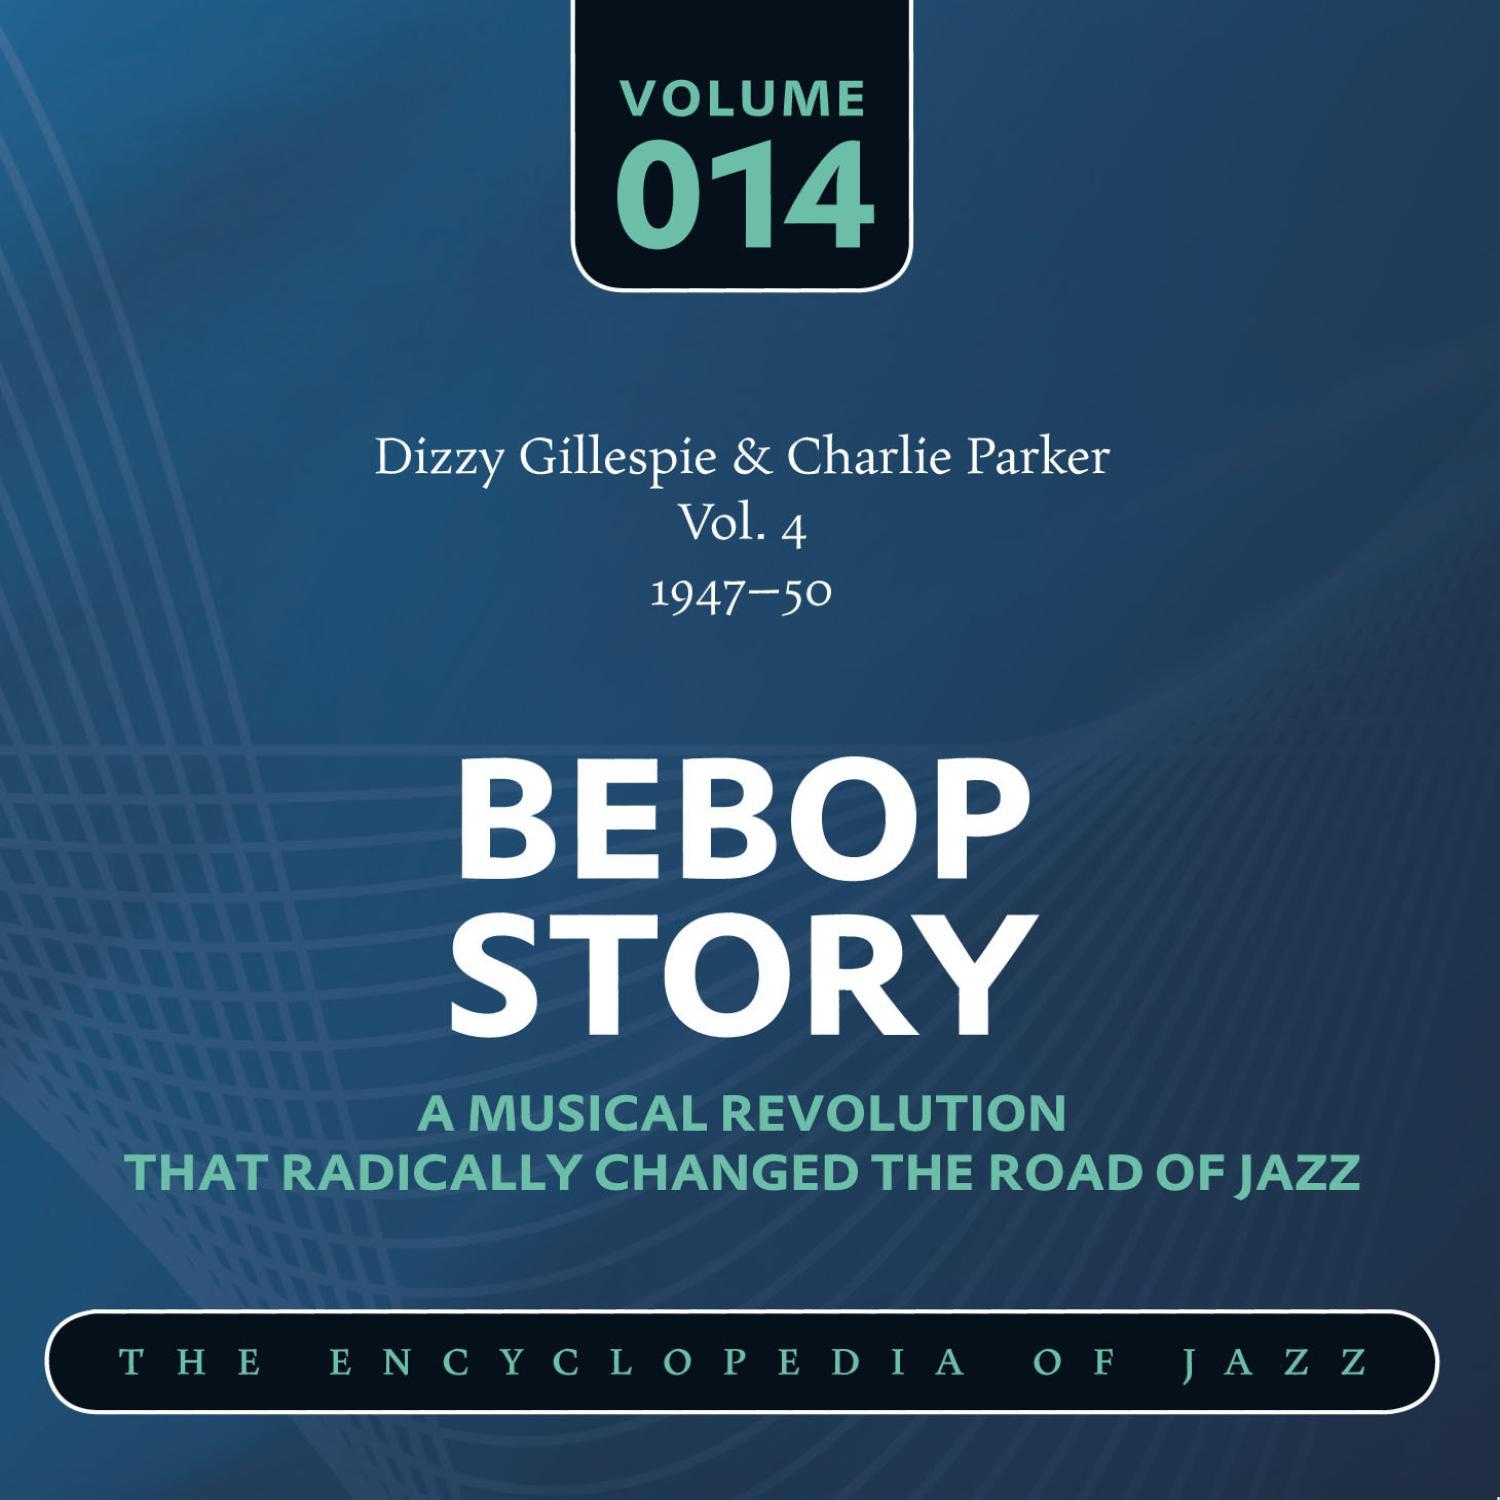 Dizzy Gillespie & Charlie Parker Vol. 4 (1947-50)